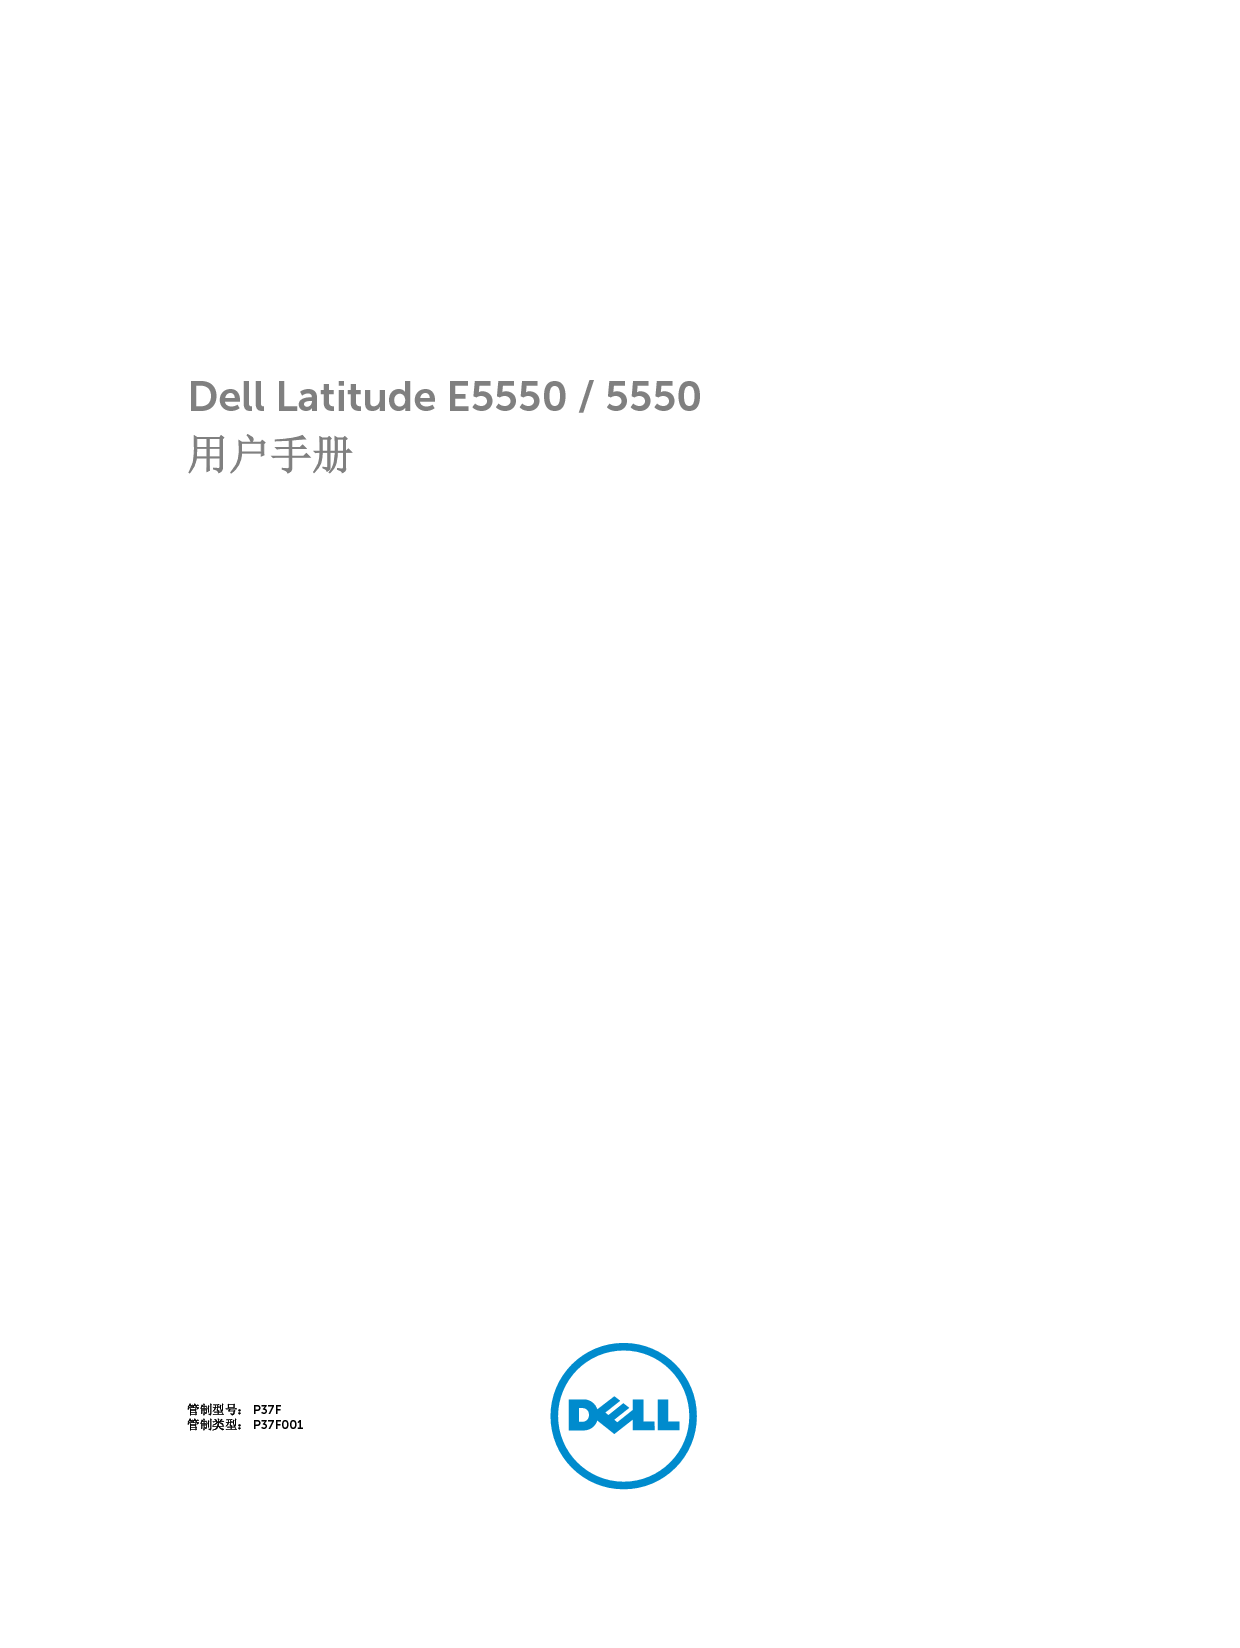 戴尔 Dell Latitude 5550 用户手册 封面